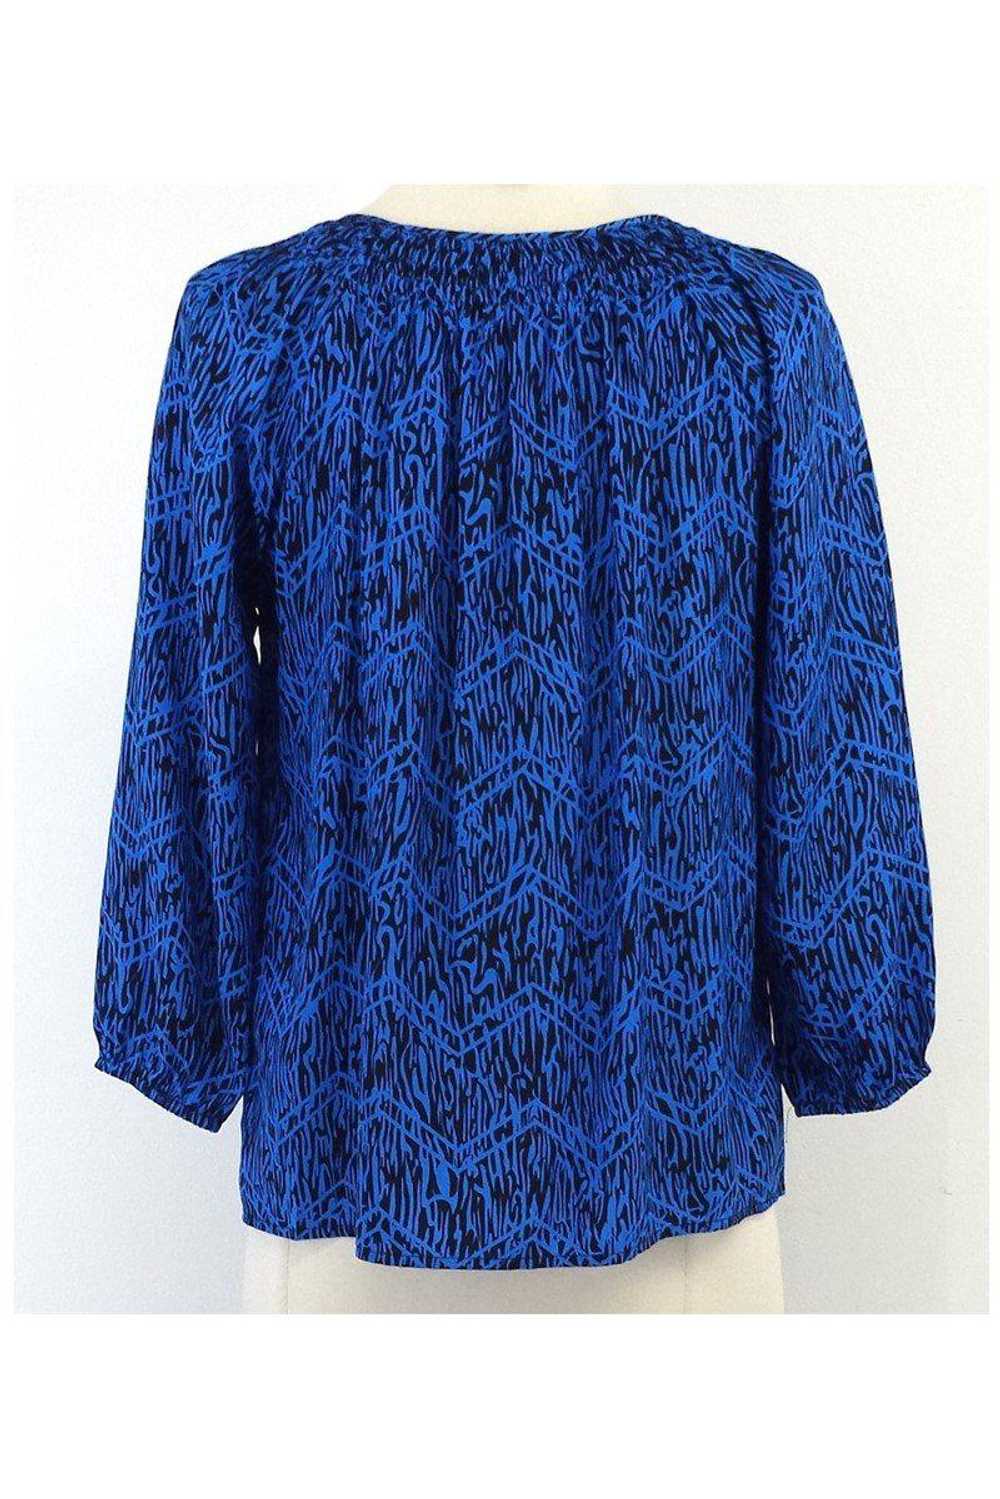 Yumi Kim - Blue & Black Print Silk Blouse Sz XS - image 3